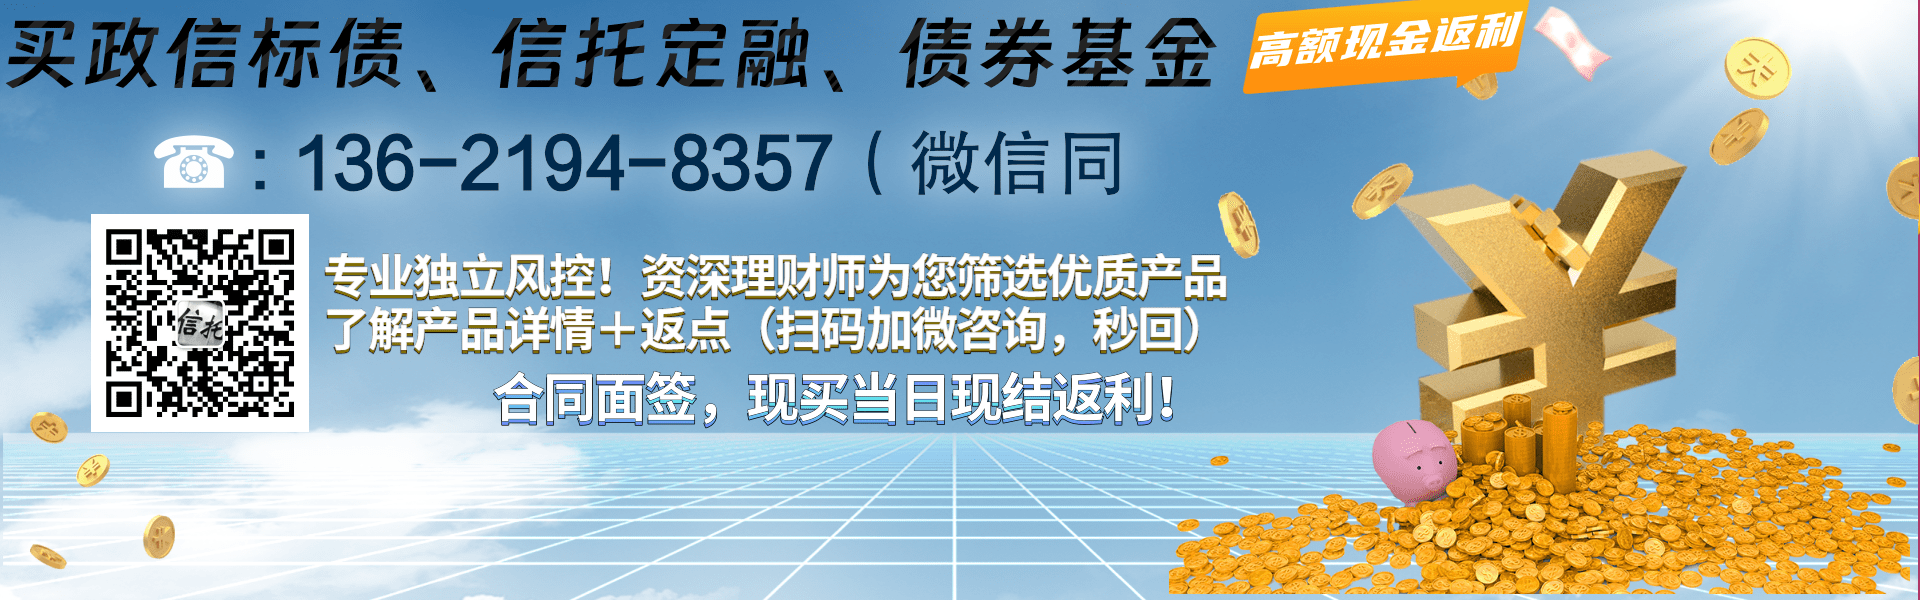 央企信托-238号济宁兖州标准城投债集合信托计划